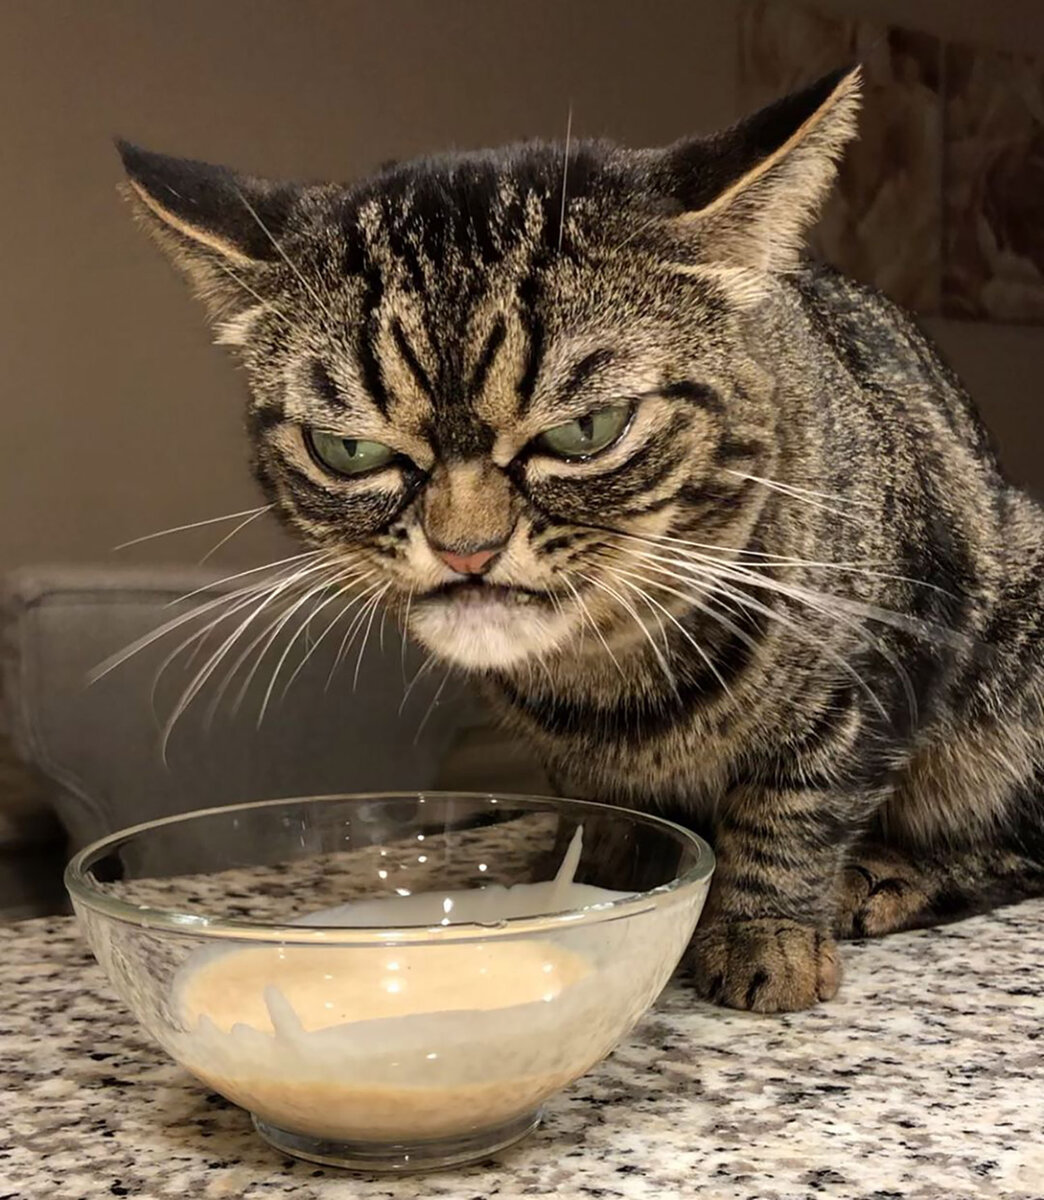 Прошёл год после смерти всемирно известного кота по кличке Grumpy cat и вот в Instagram снова появился Сердитый кот. Правда, в этот раз мы имеем дело с кошкой.